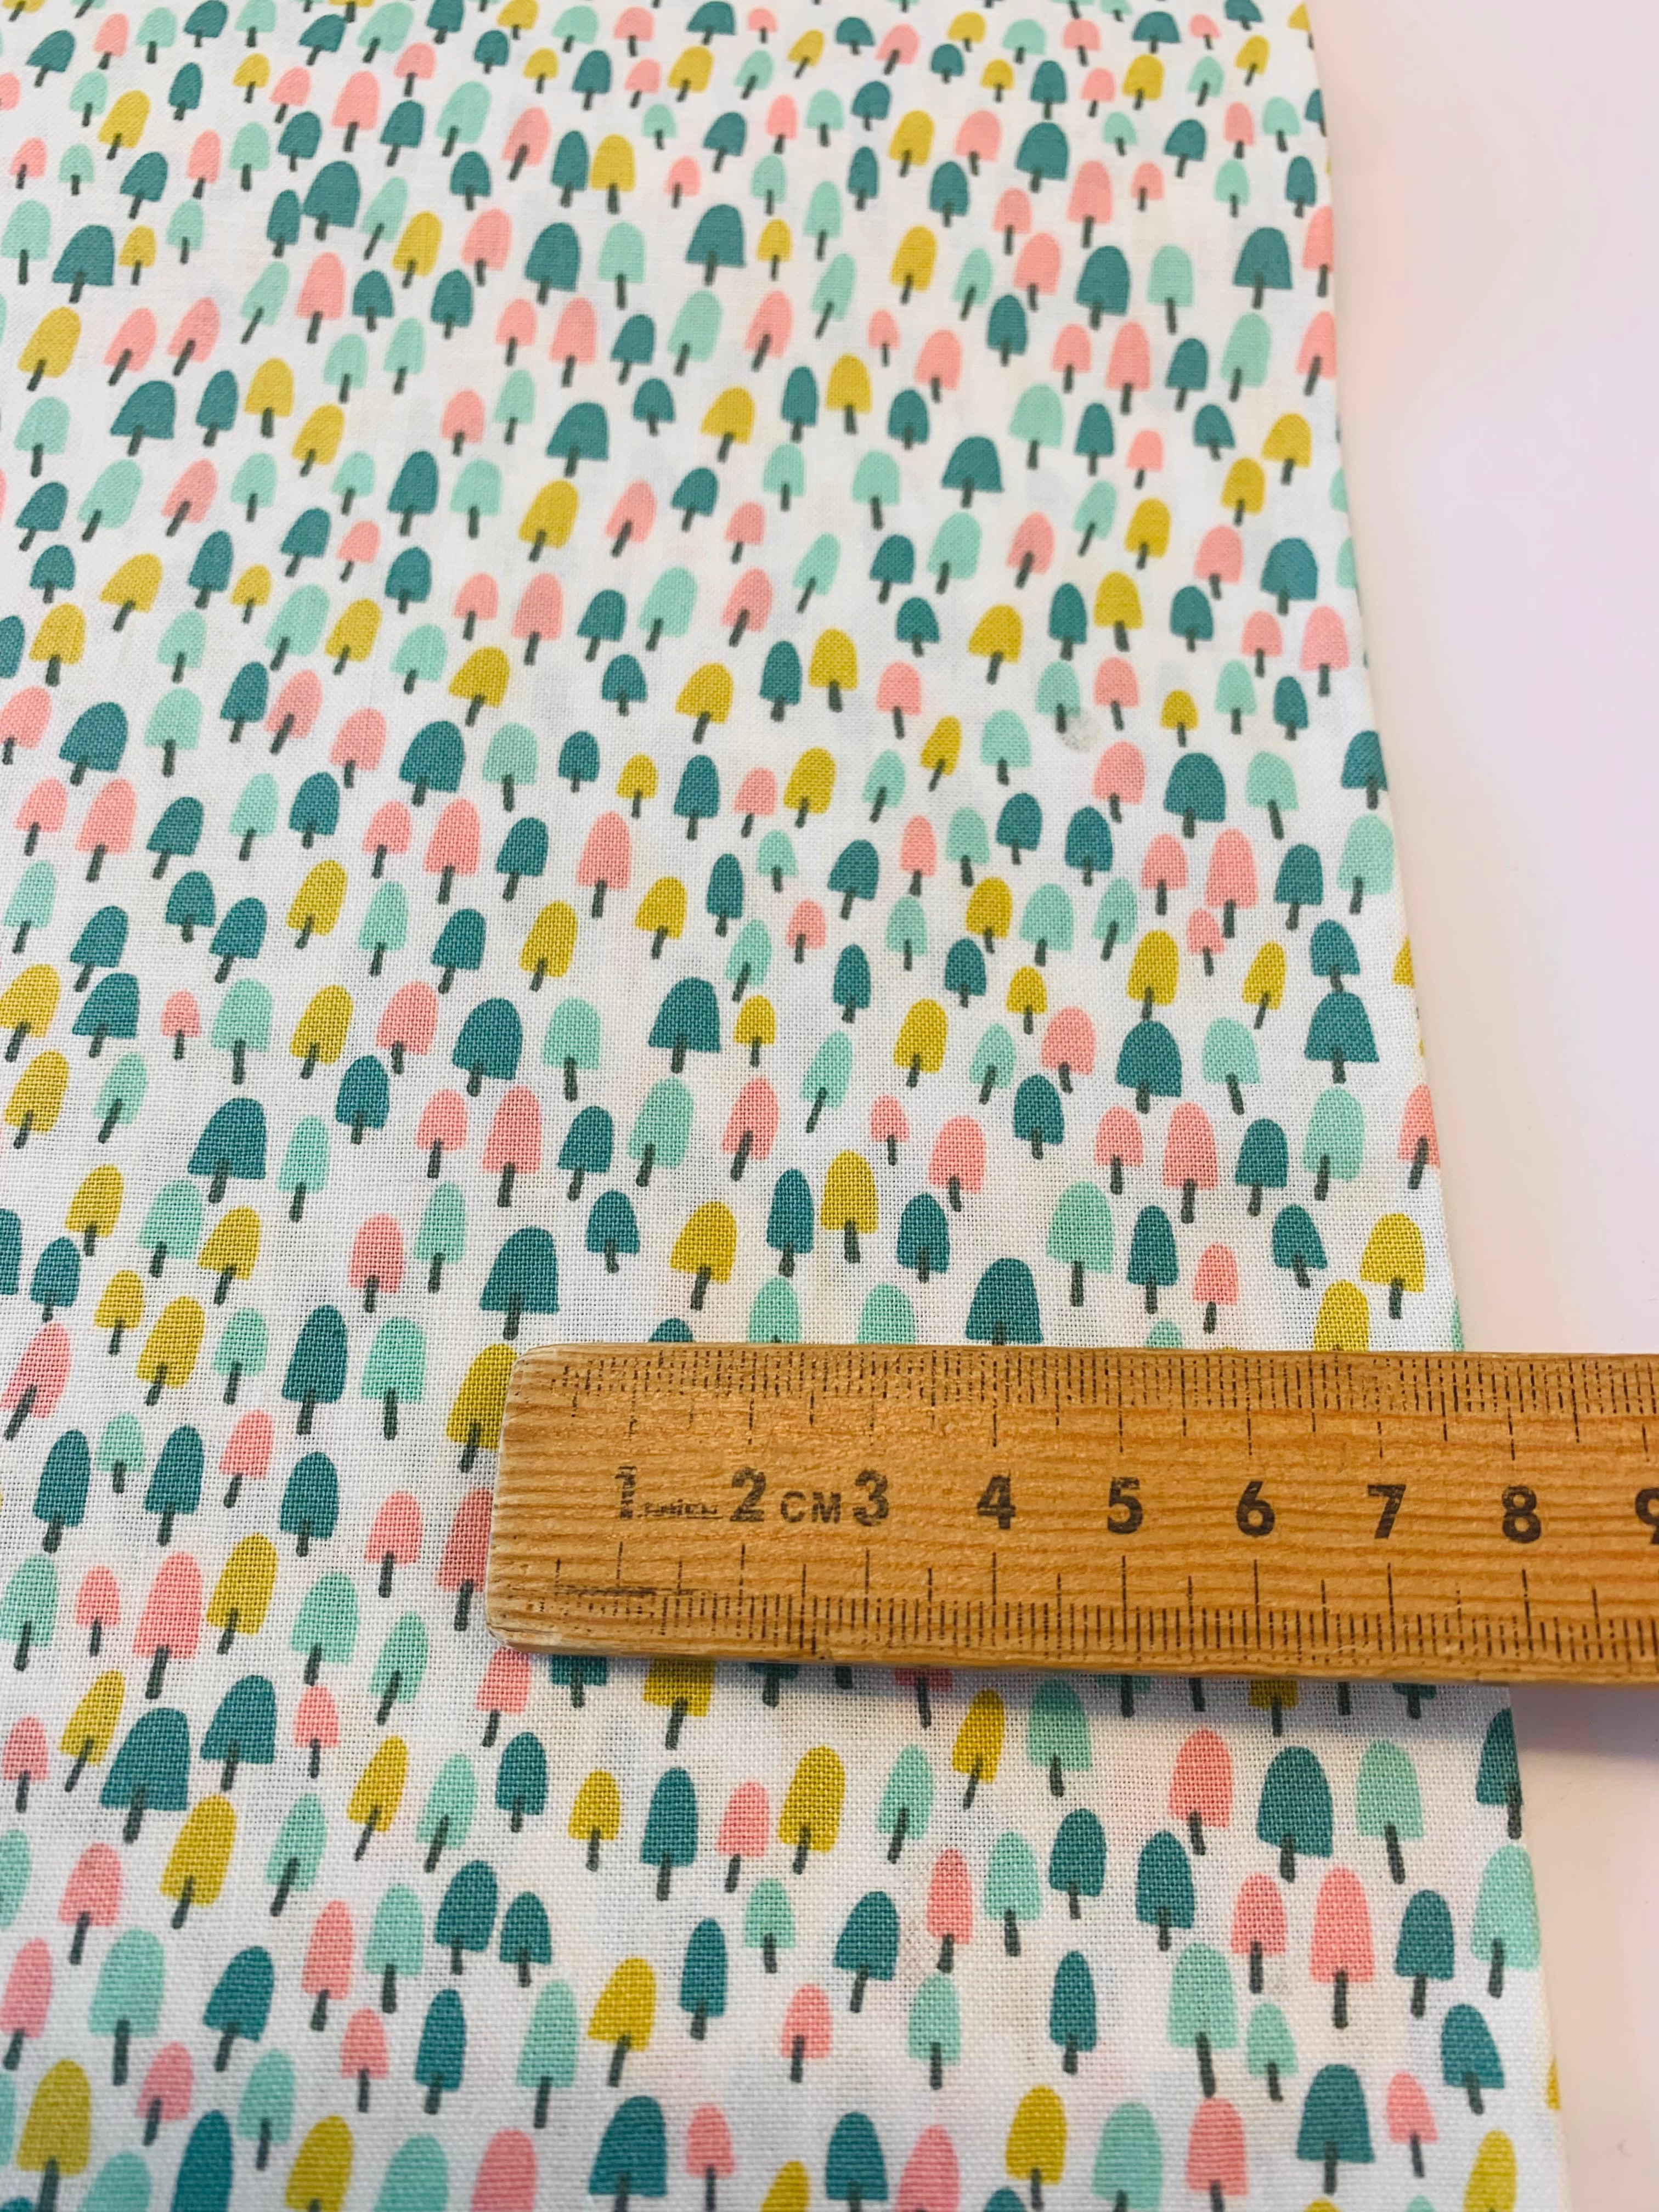 Tiny Trees by Felicity Fabrics